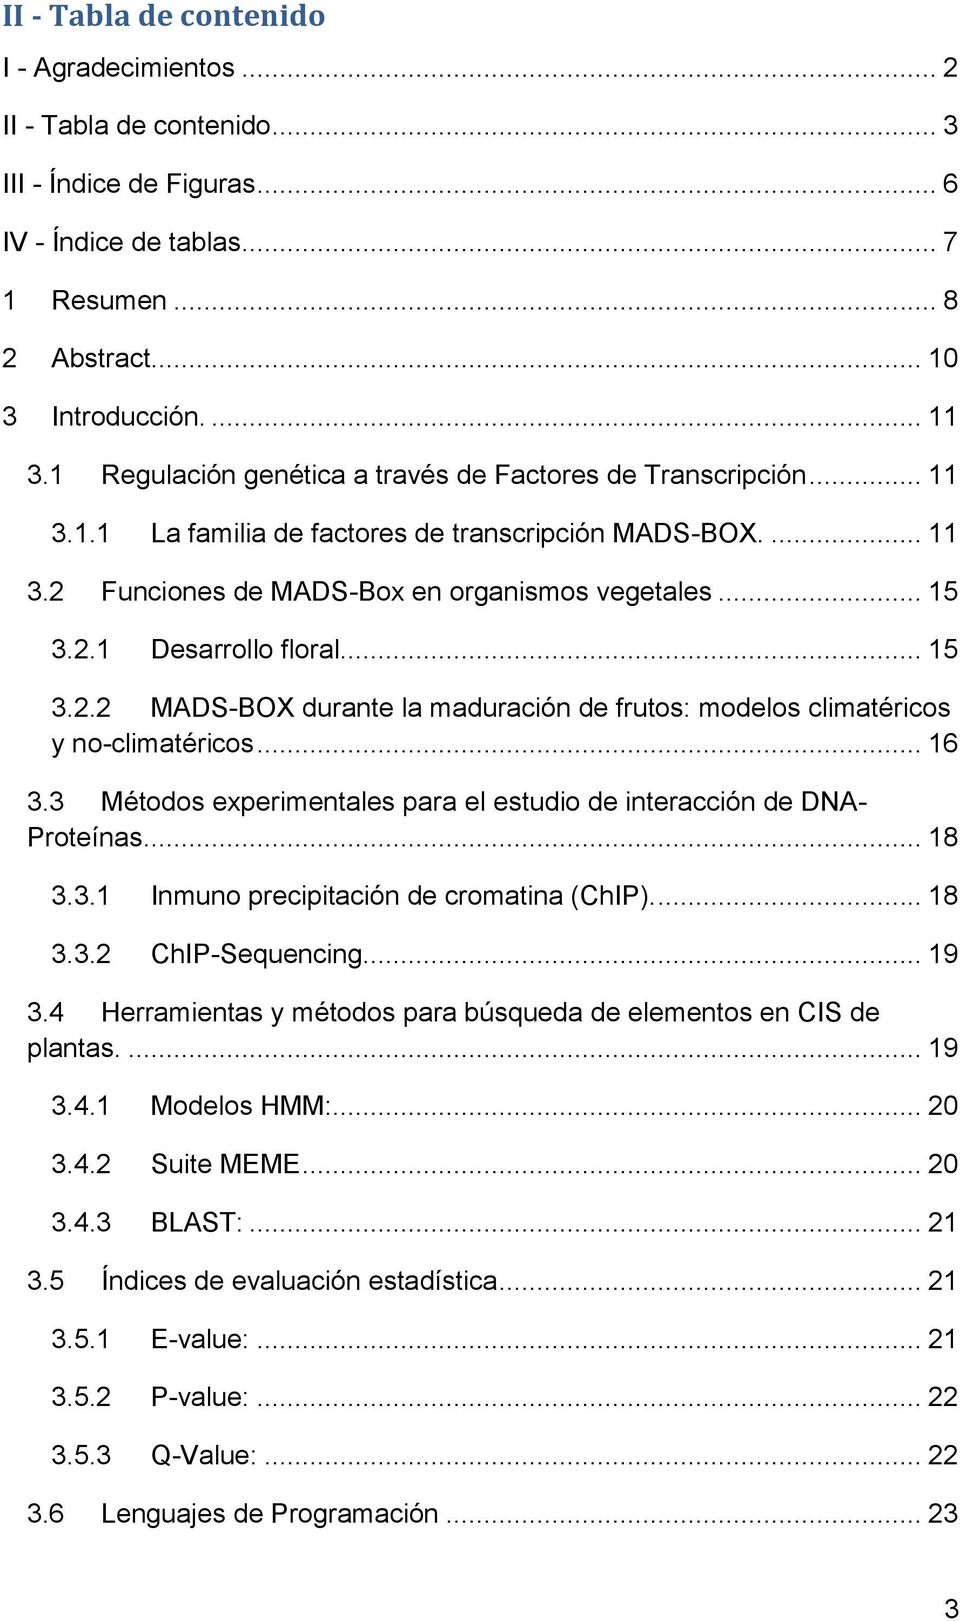 .. 15 3.2.2 MADS-BOX durante la maduración de frutos: modelos climatéricos y no-climatéricos... 16 3.3 Métodos experimentales para el estudio de interacción de DNA- Proteínas... 18 3.3.1 Inmuno precipitación de cromatina (ChIP).